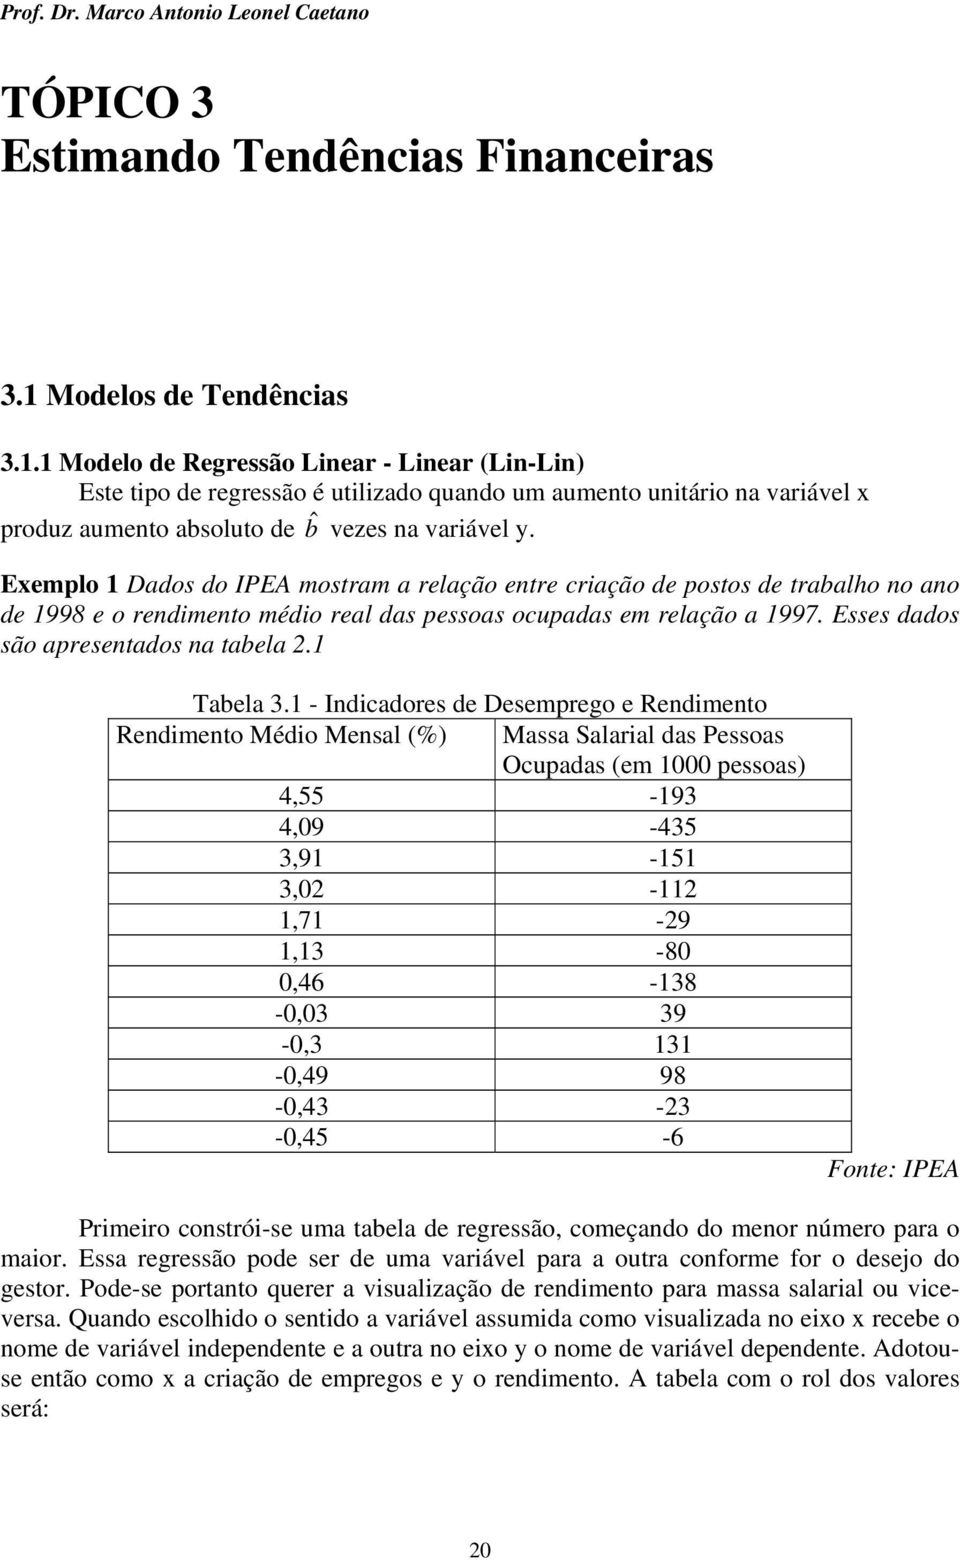 Exemplo Dados do IPEA mostram a relação etre cração de postos de trabalho o ao de 998 e o redmeto médo real das pessoas ocupadas em relação a 997. Esses dados são apresetados a tabela. Tabela 3.